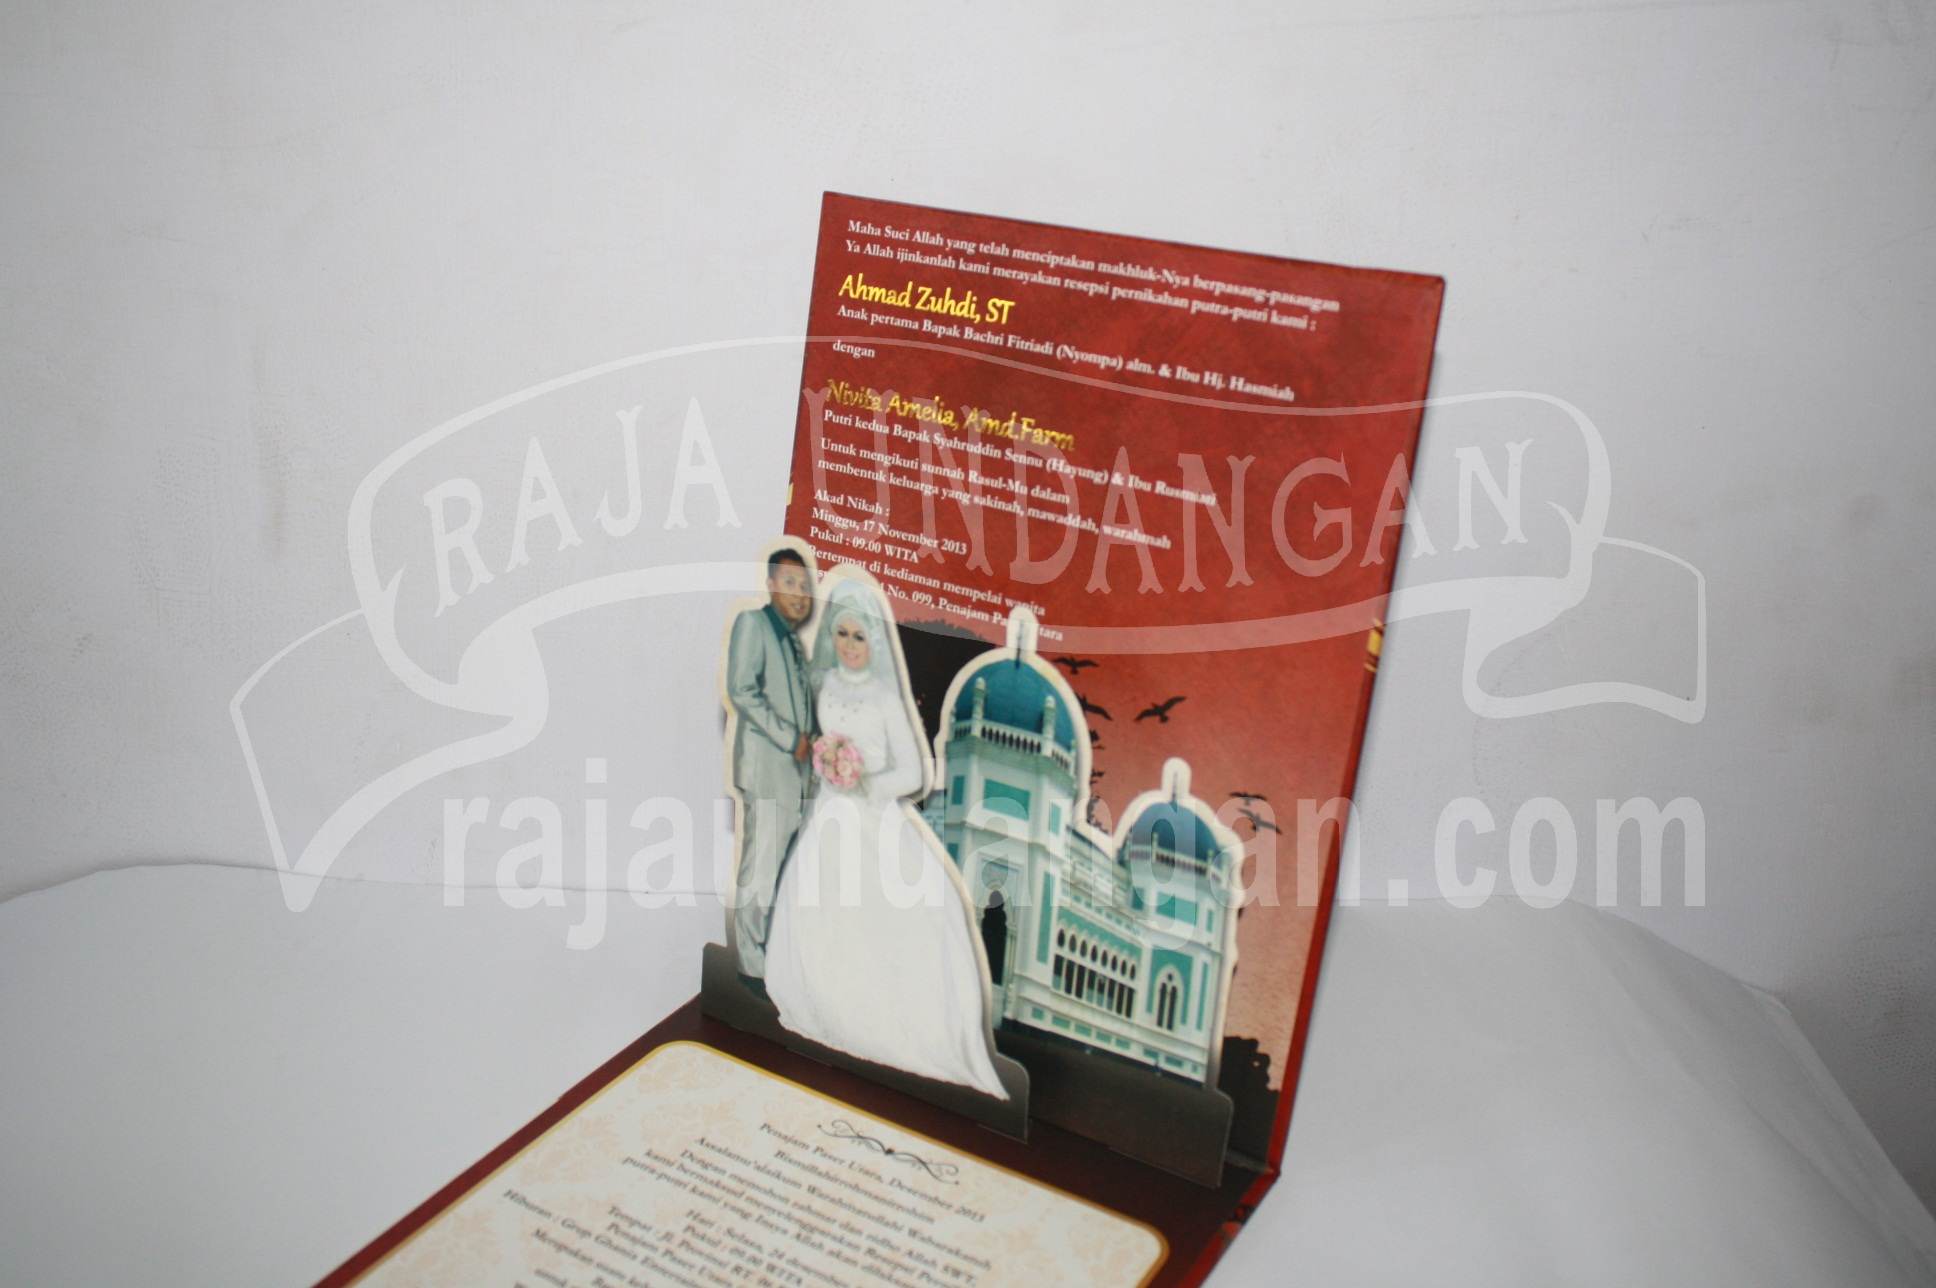 Undangan Pernikahan Hardcover Pop Up Pakai Amplop Yudi dan Vita EDC 44 3 - Percetakan Undangan Perkawinan Unik dan Simple di Pagesangan